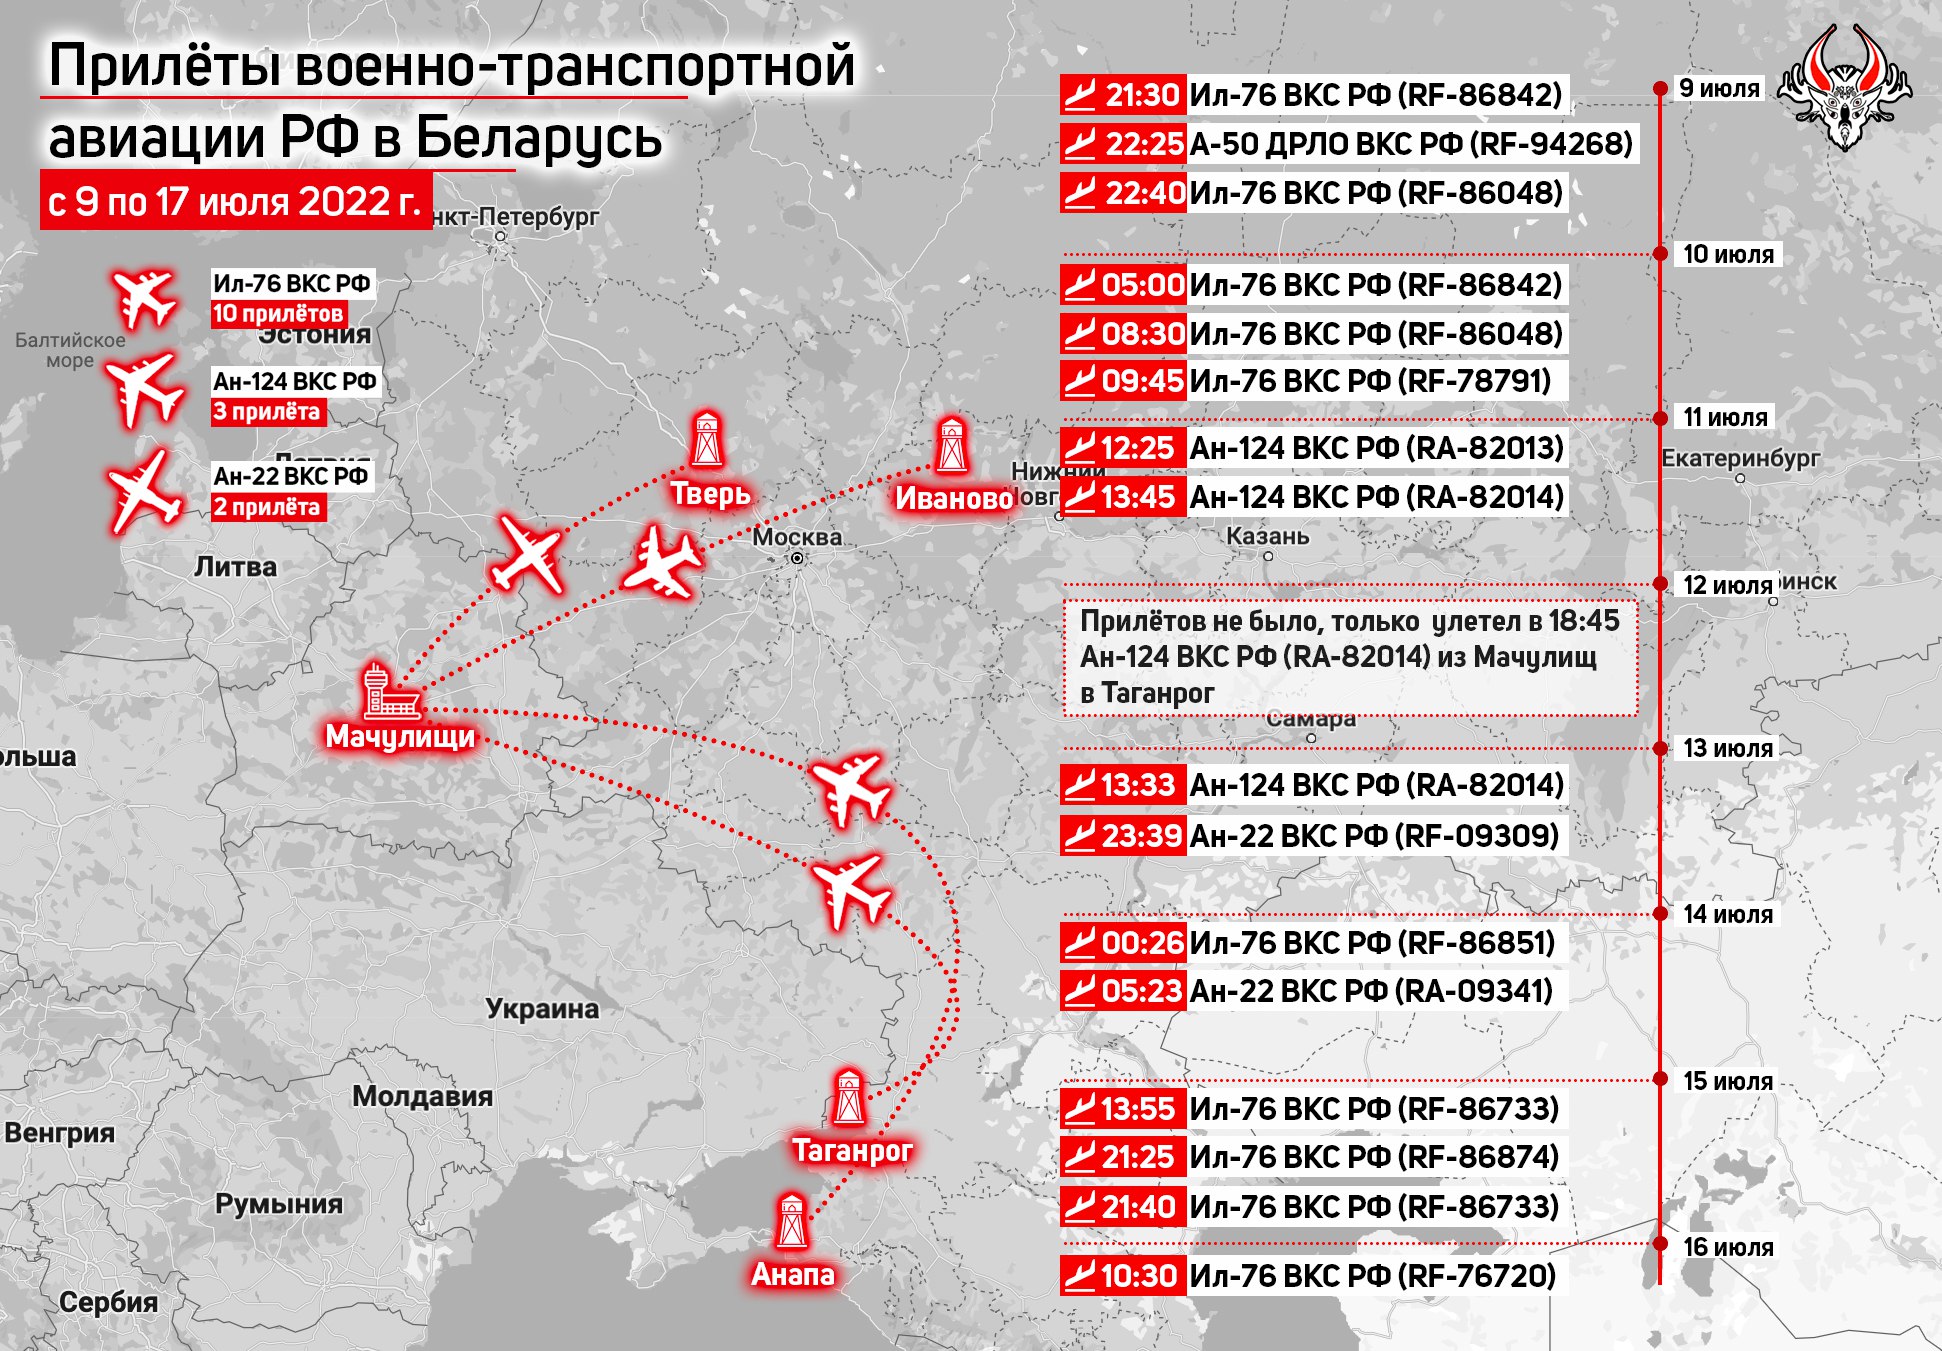 За останній тиждень значно збільшилася кількість рейсів до Білорусі військово-транспортних літаків РФ.

